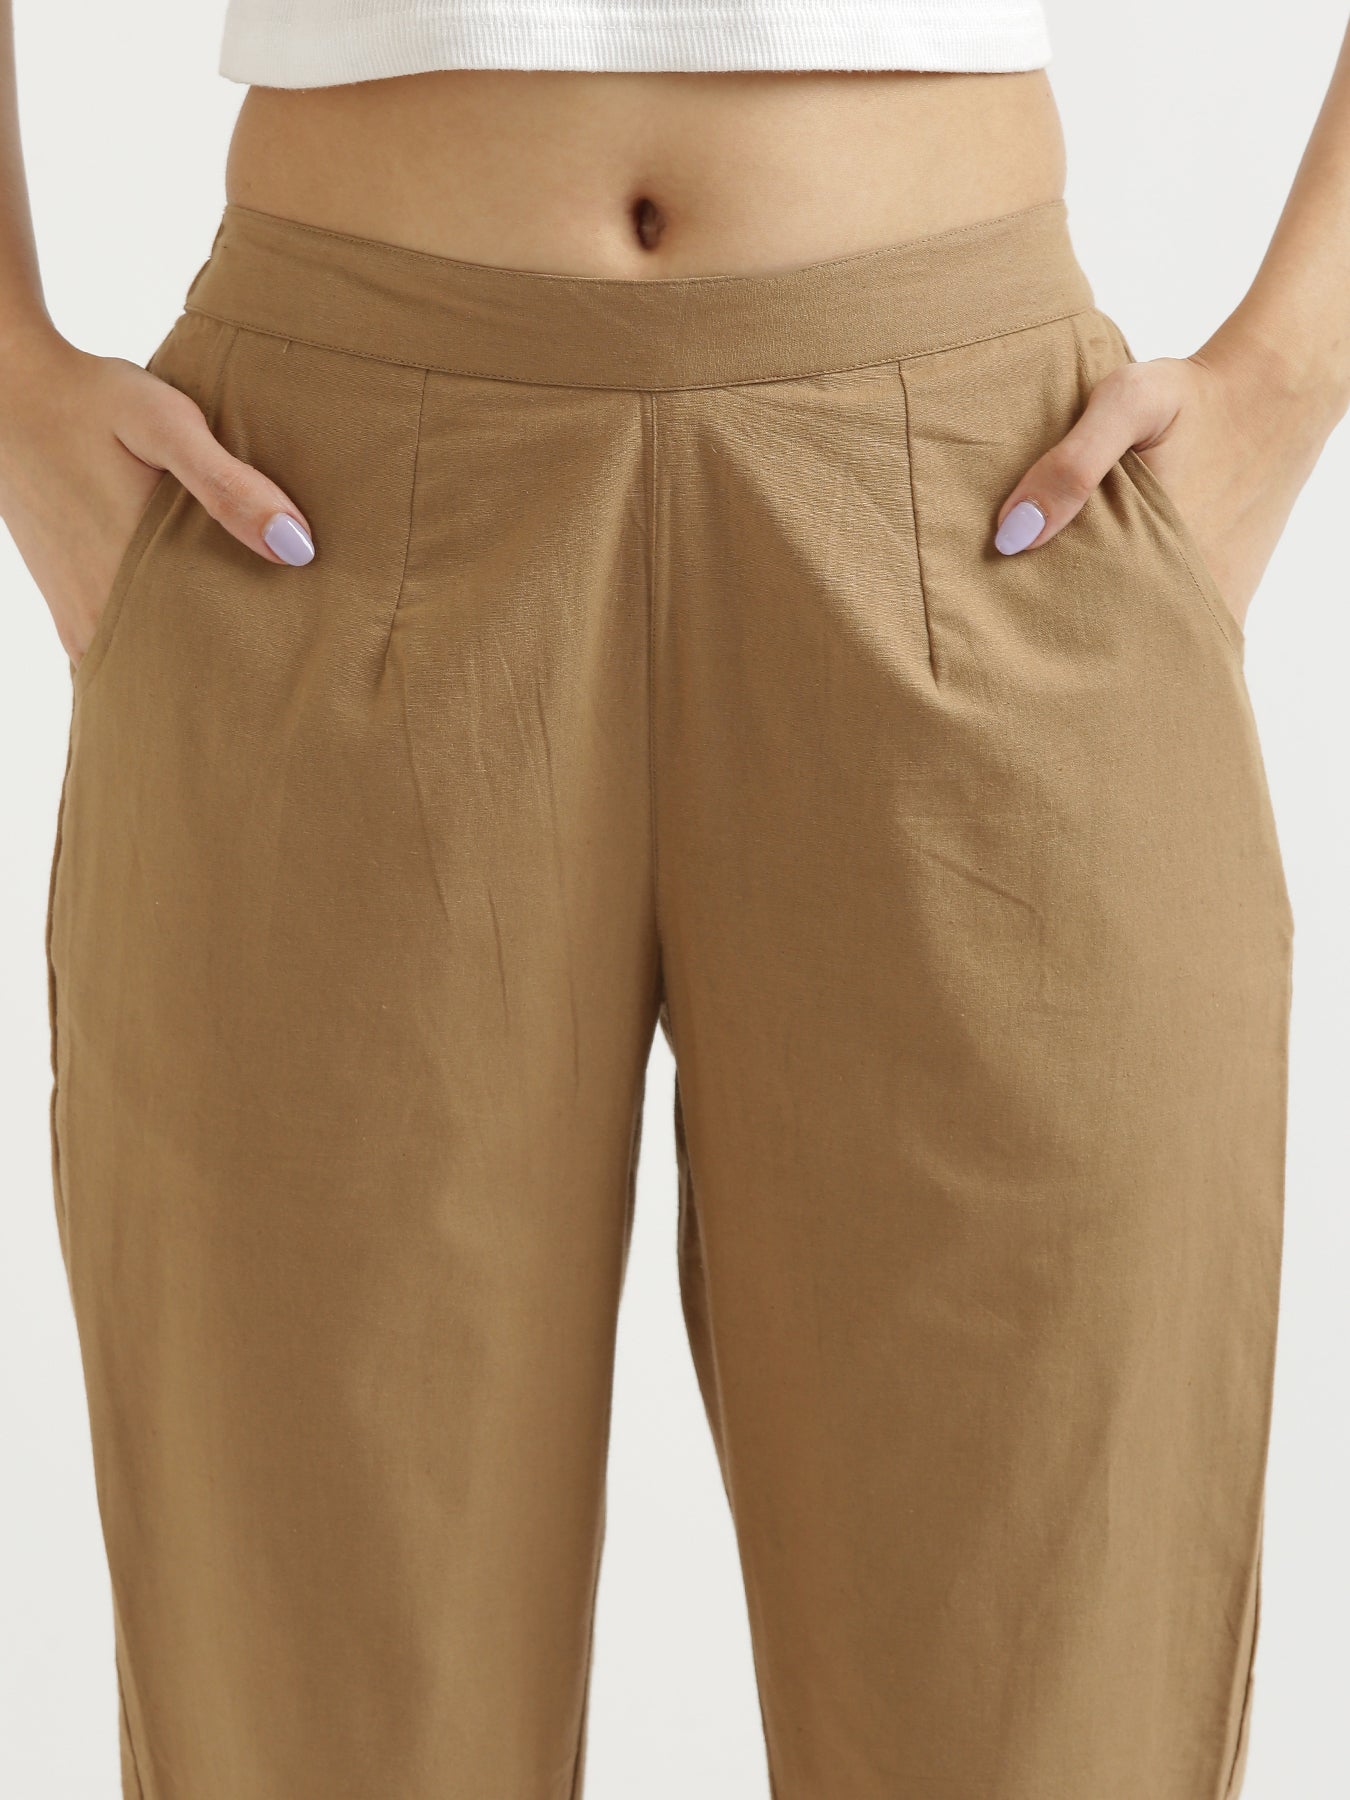 Shorts: Check Women Black Cotton Shorts at Cliths